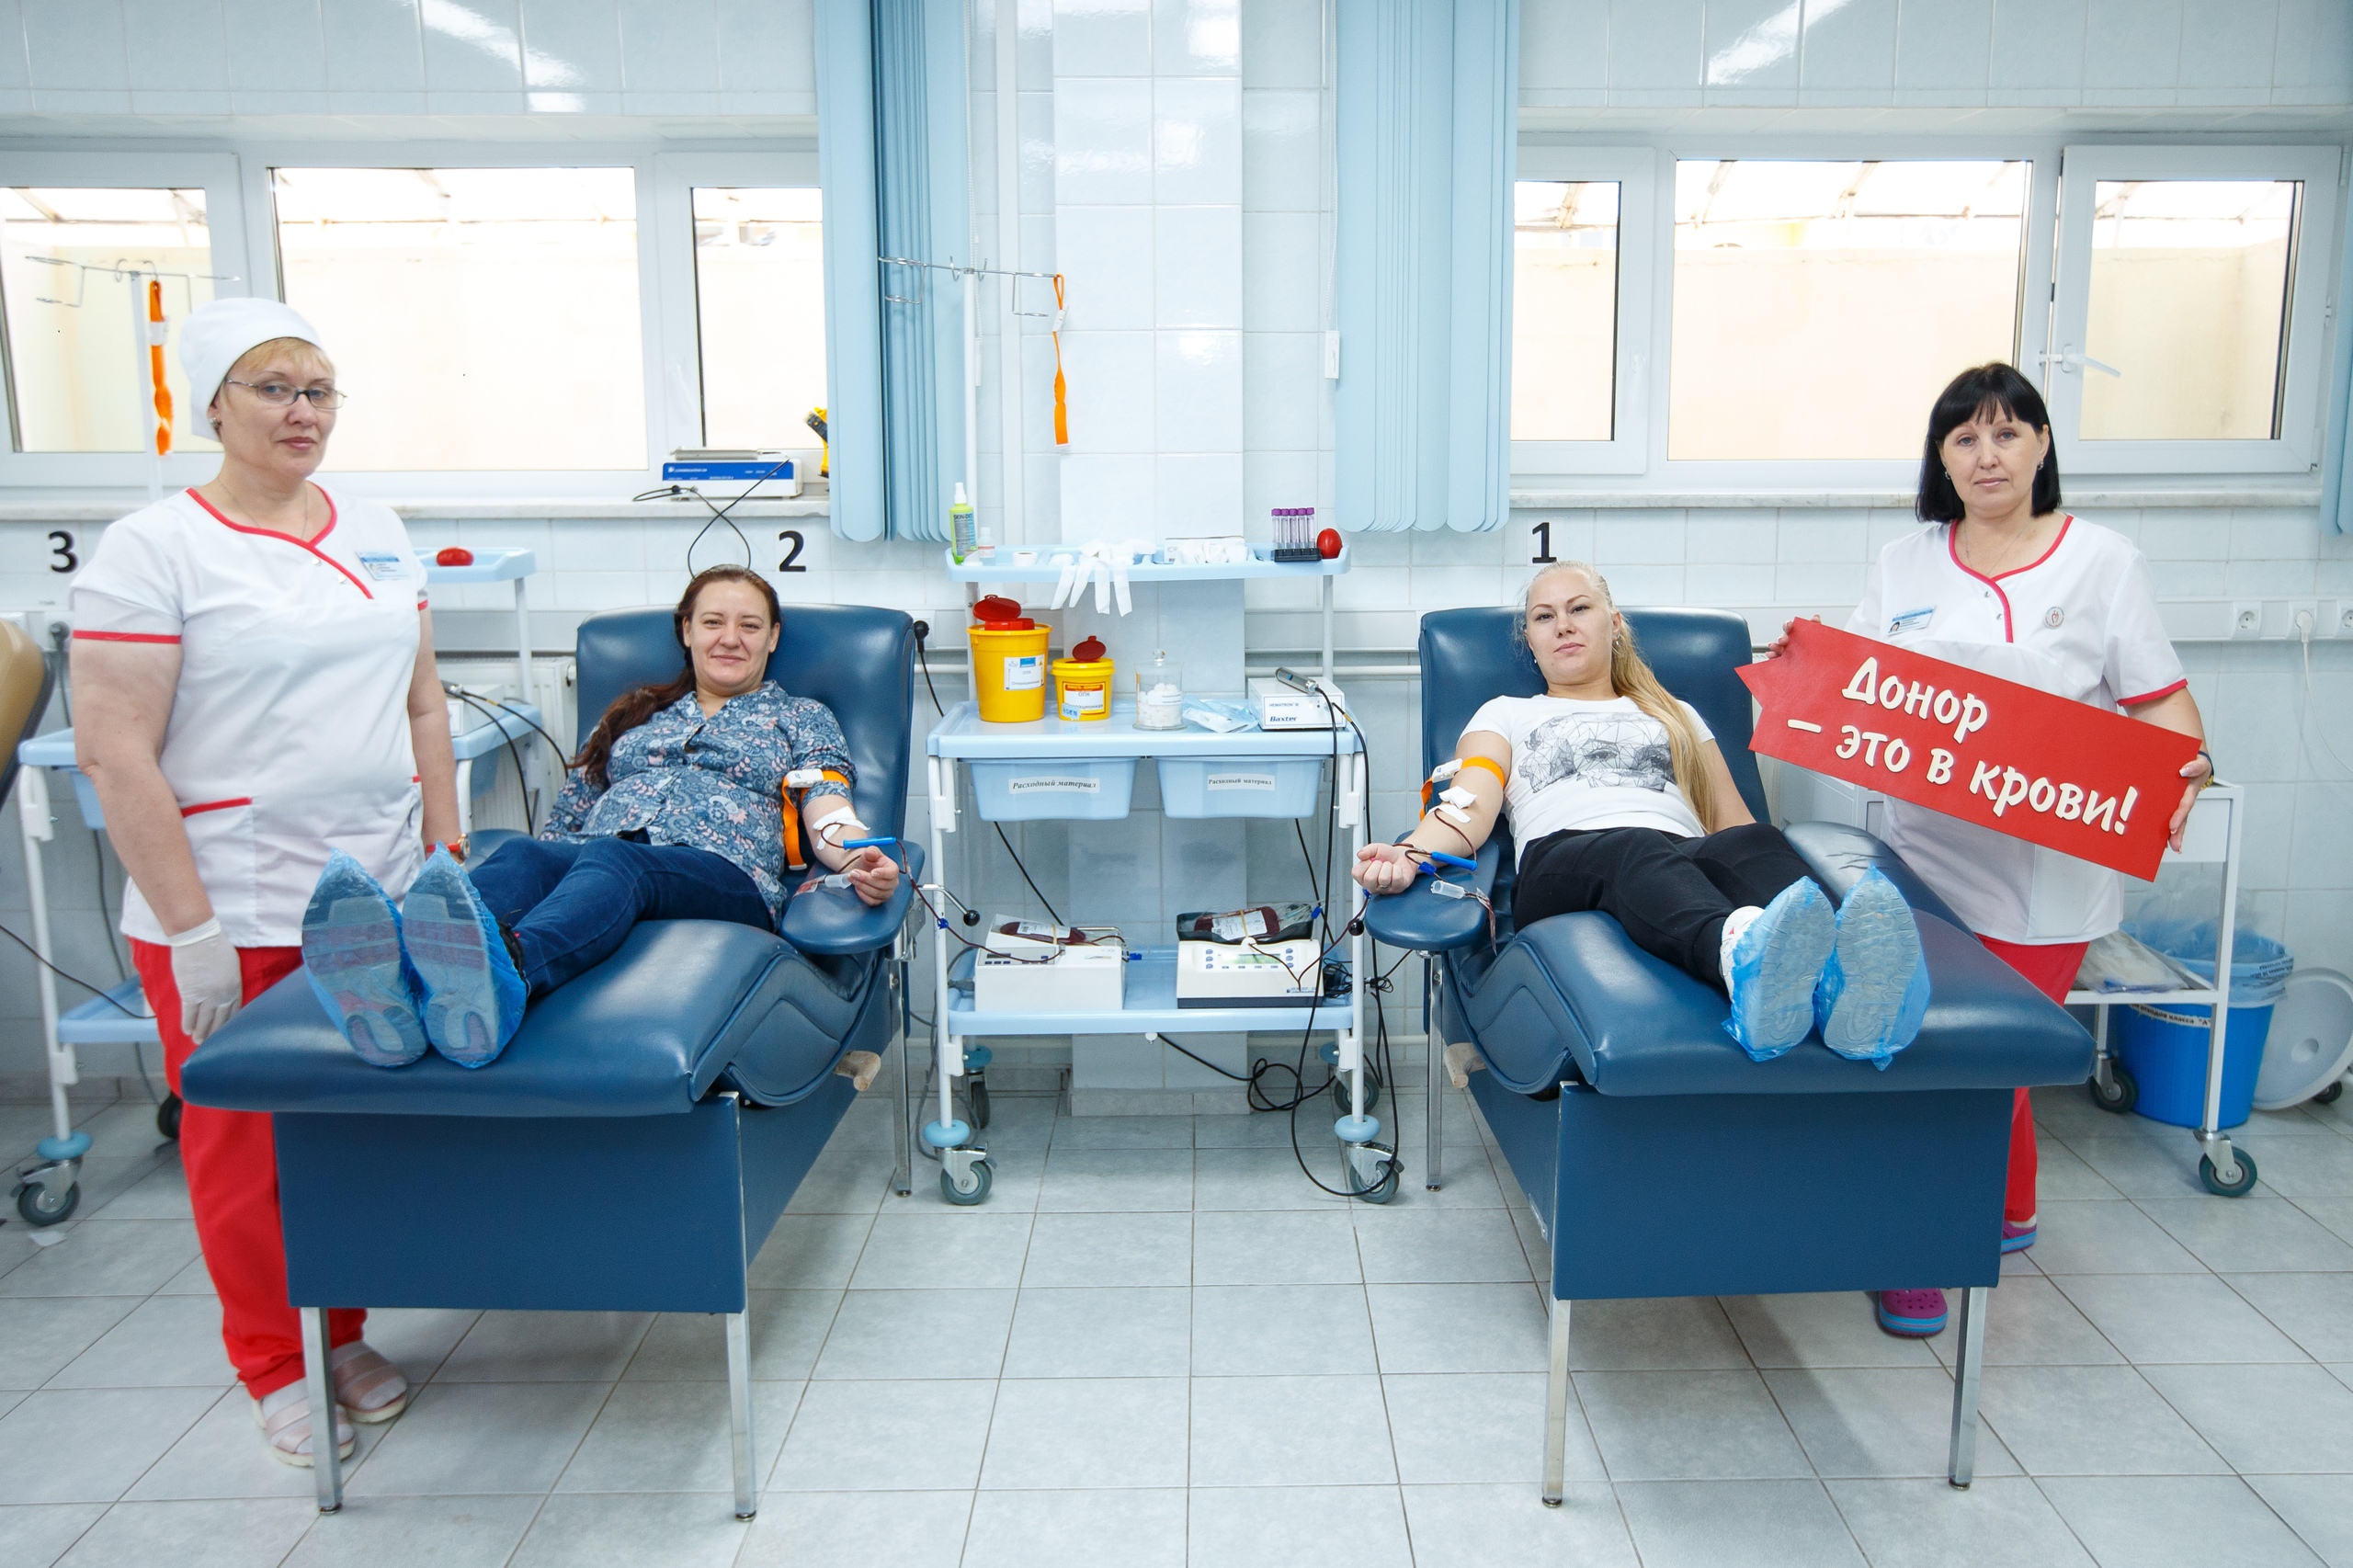 Сайт доноров крови. День донора. Донорство в России. День донора в России. Донор крови.